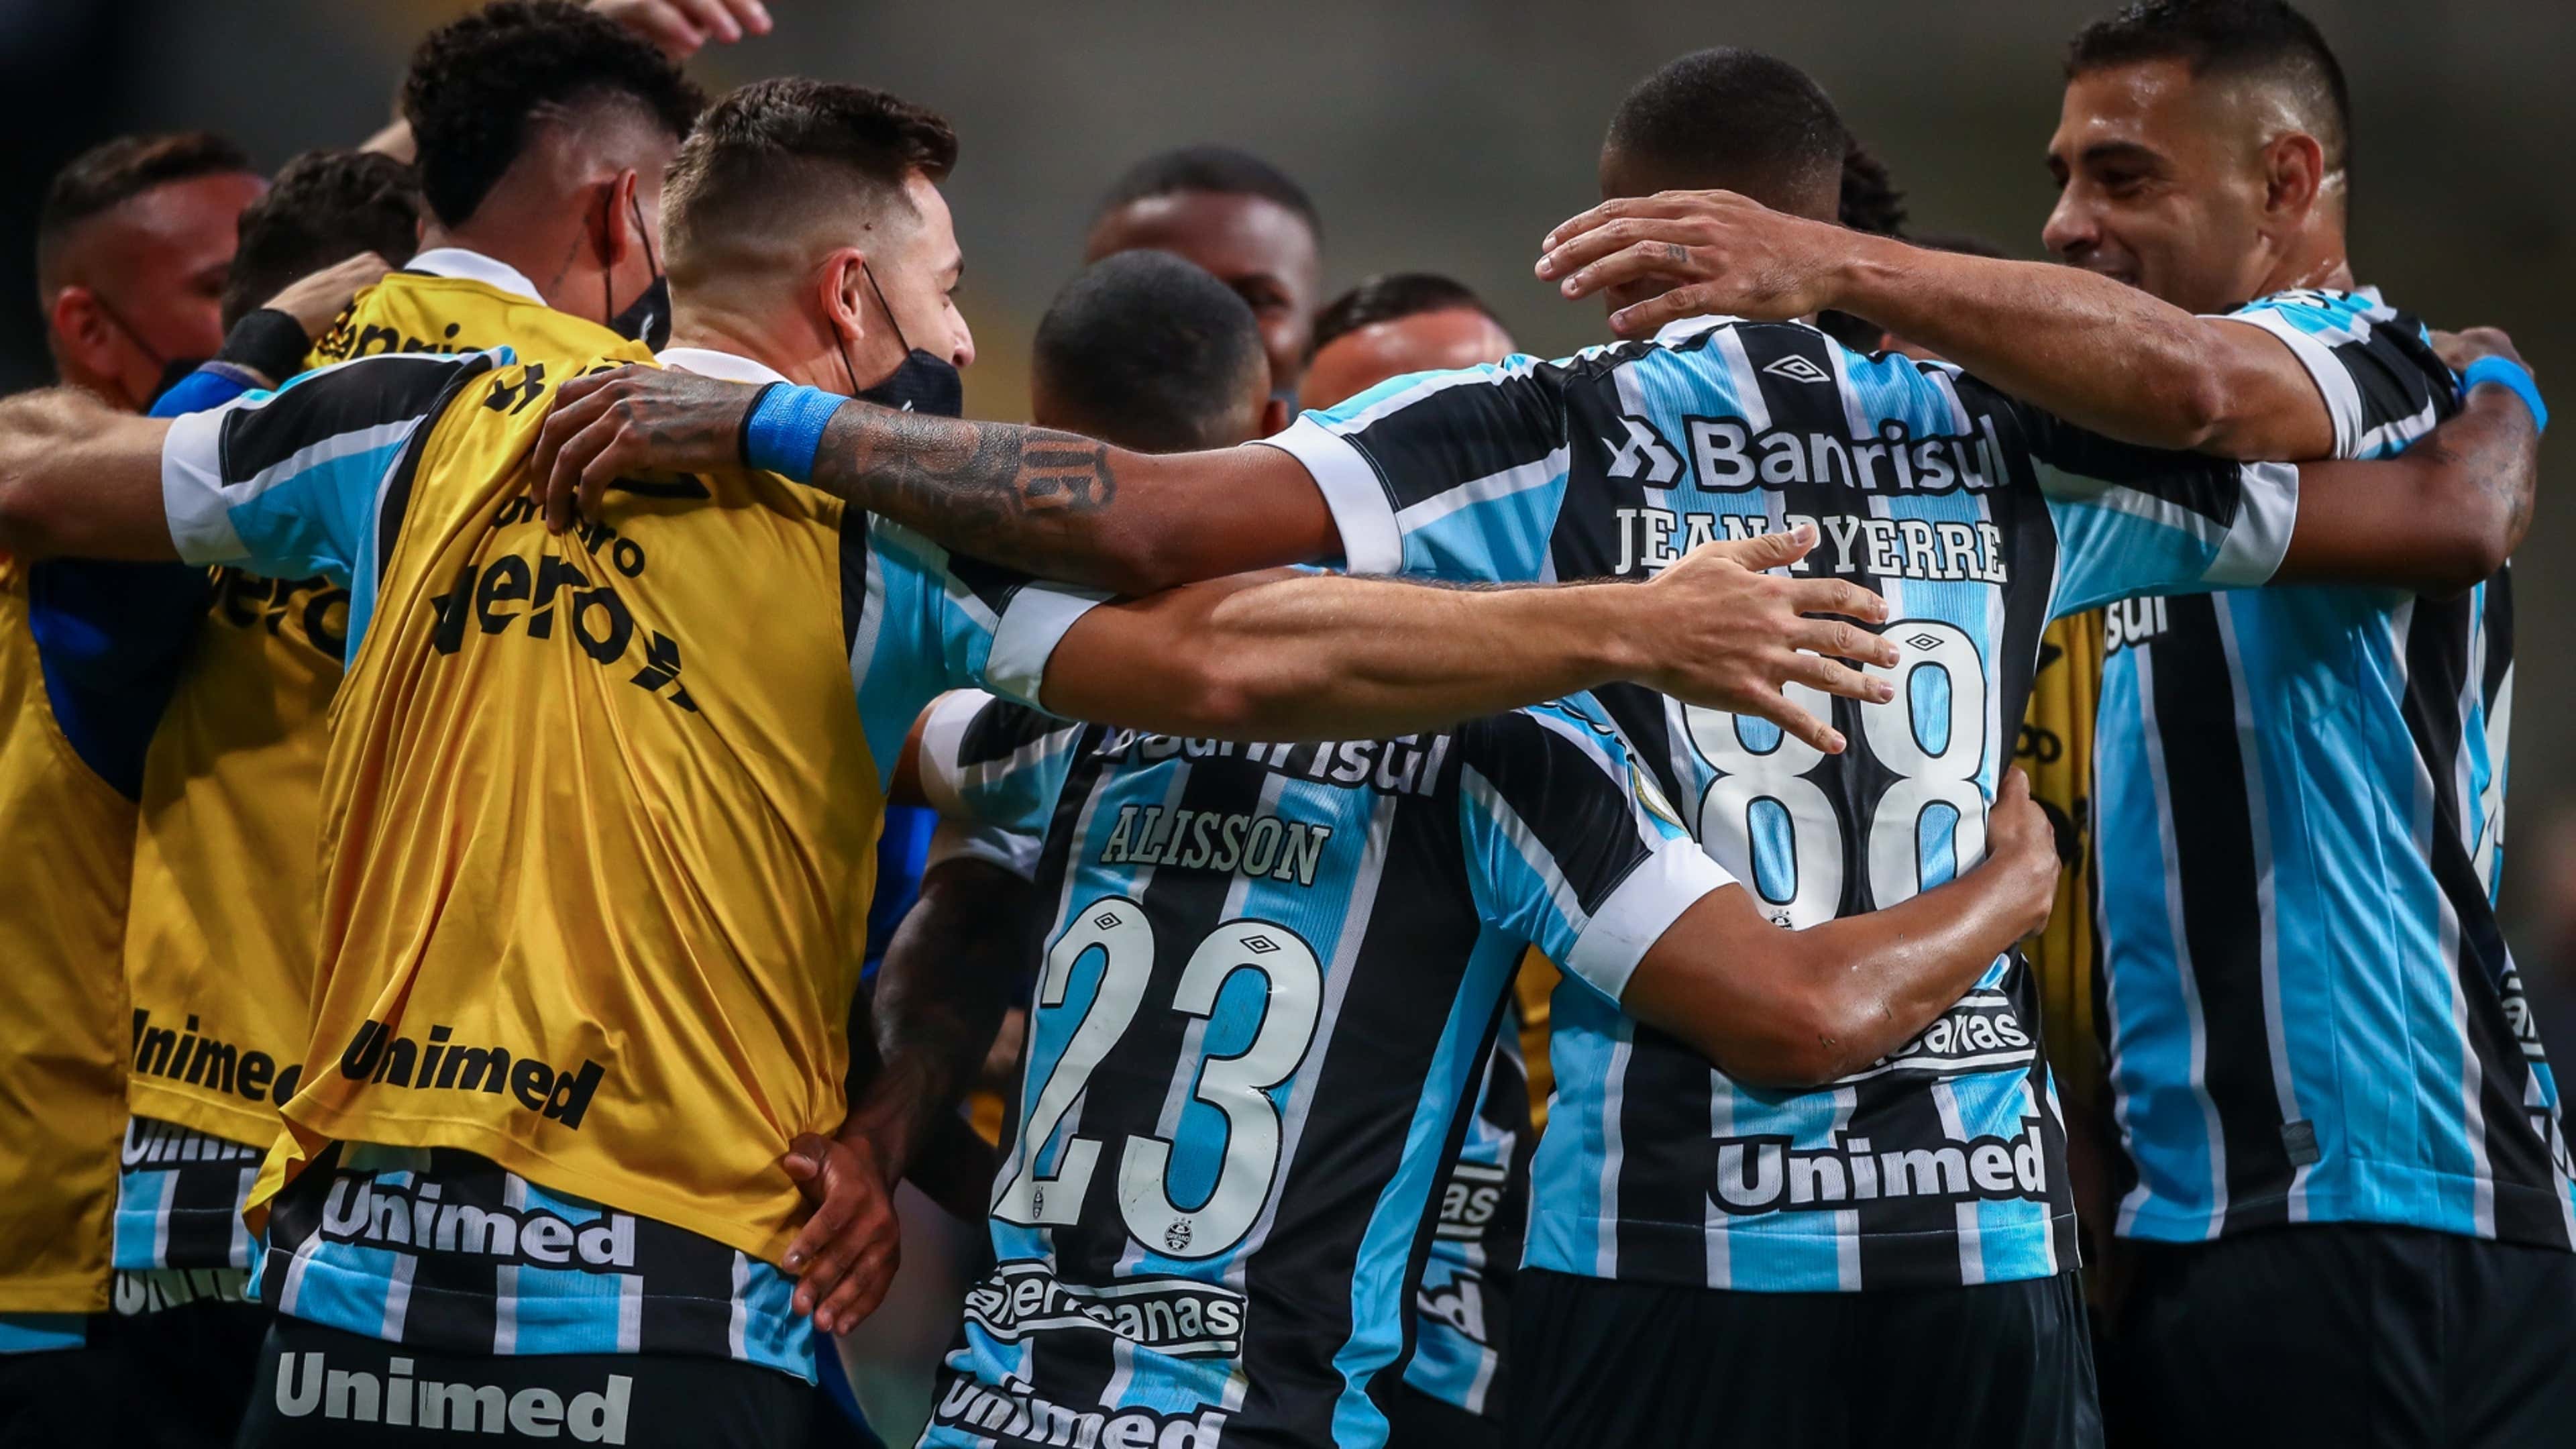 Grêmio x Atlético-MG: horário, como assistir e tudo sobre o jogo da última  rodada do Brasileirão